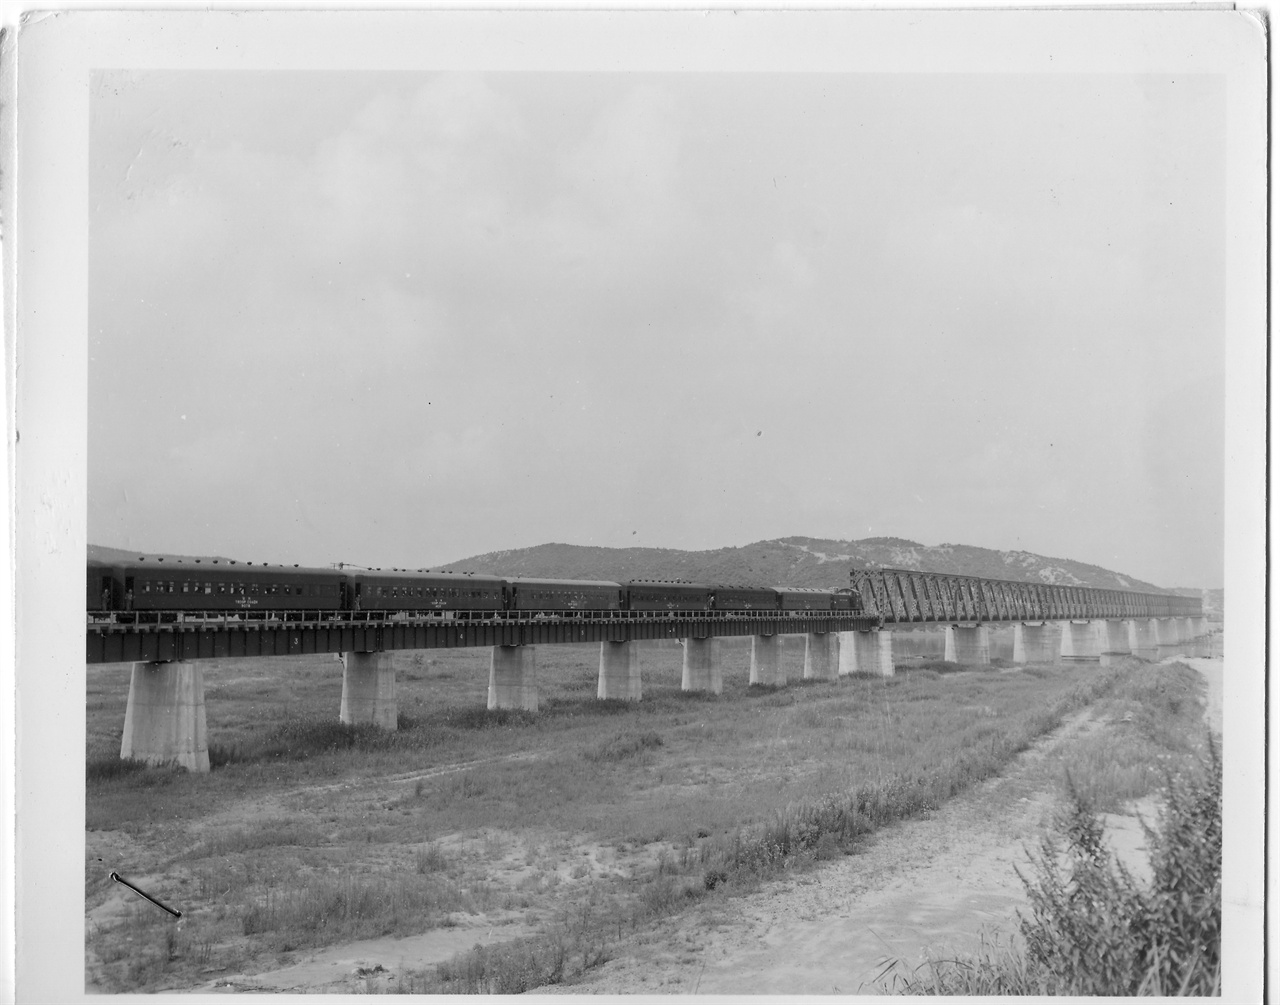  1953. 8. 8. 국군 포로를 태운 열차가 임진강 철교를 건너오고 있다.